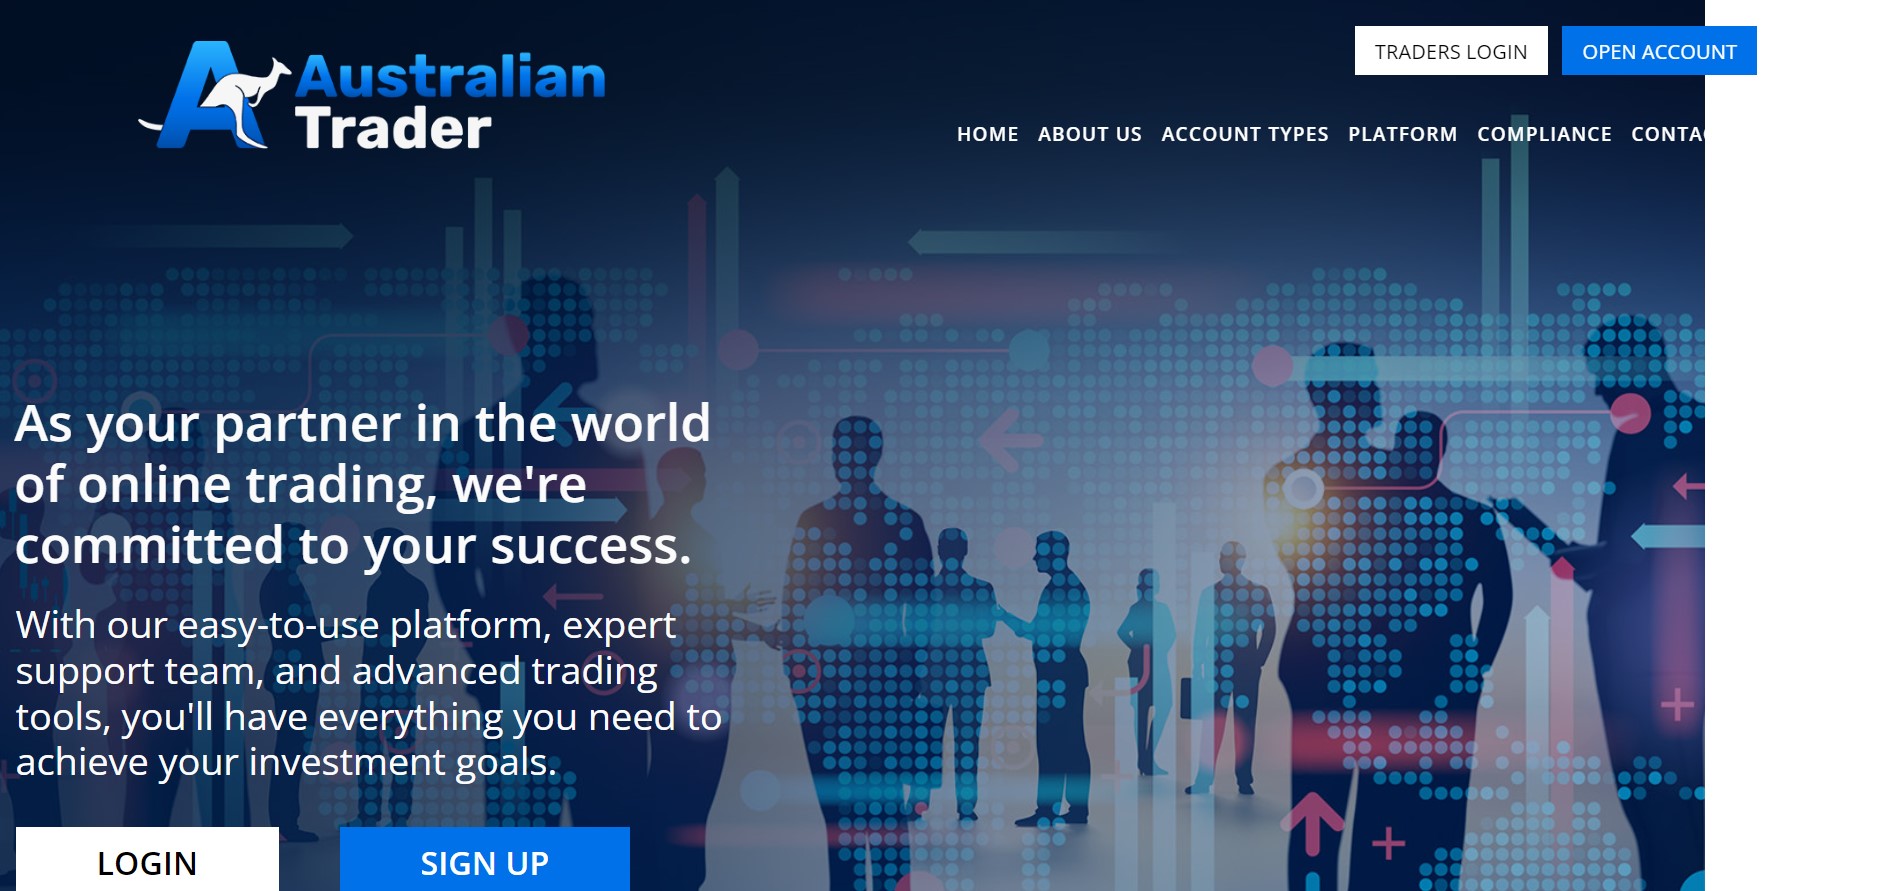 Australian Trader website